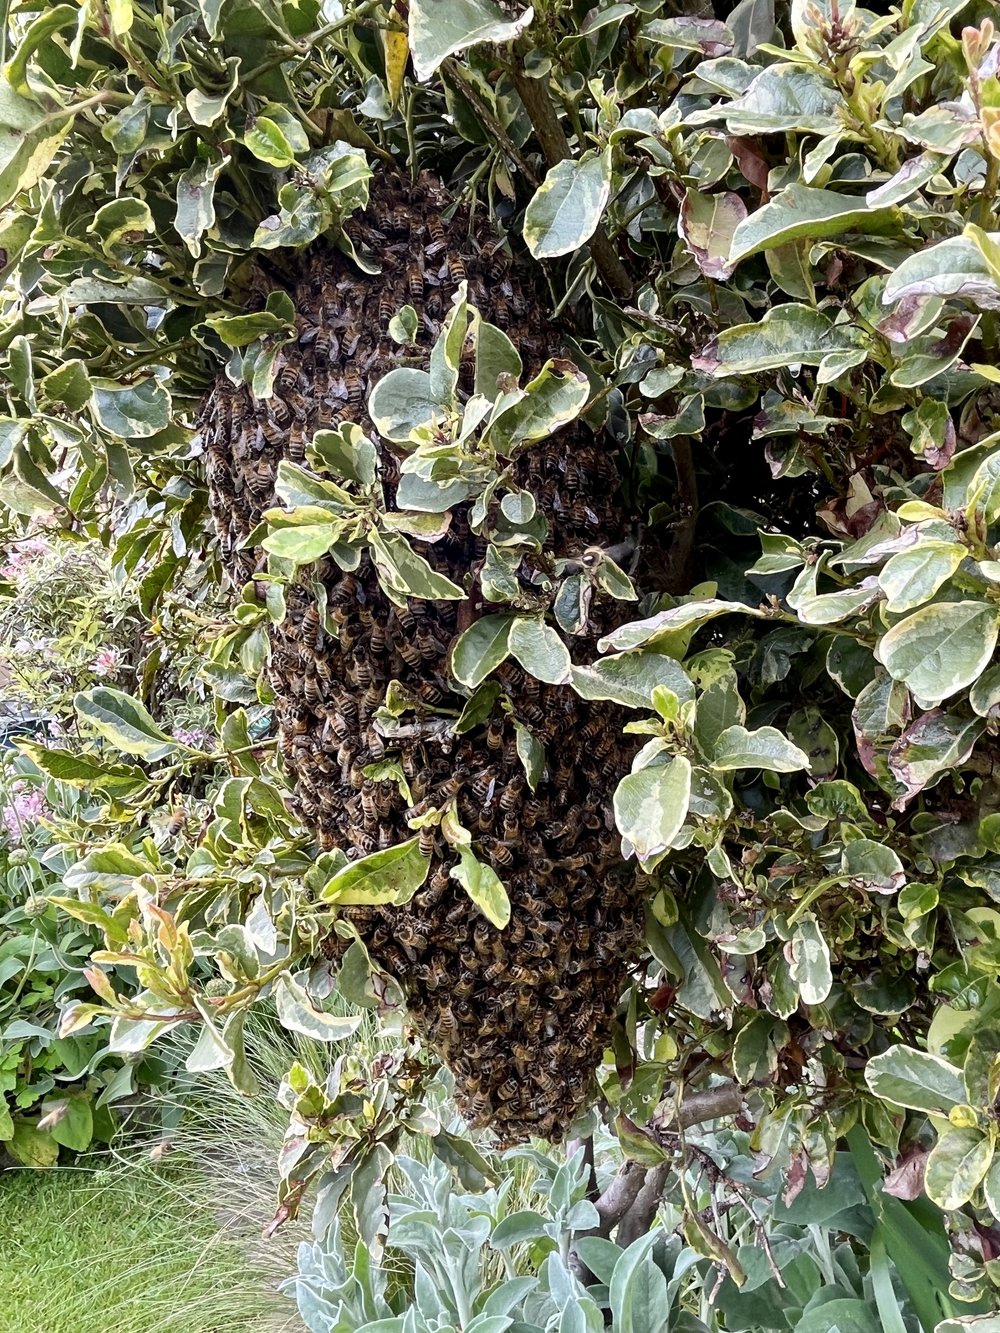 The swarm